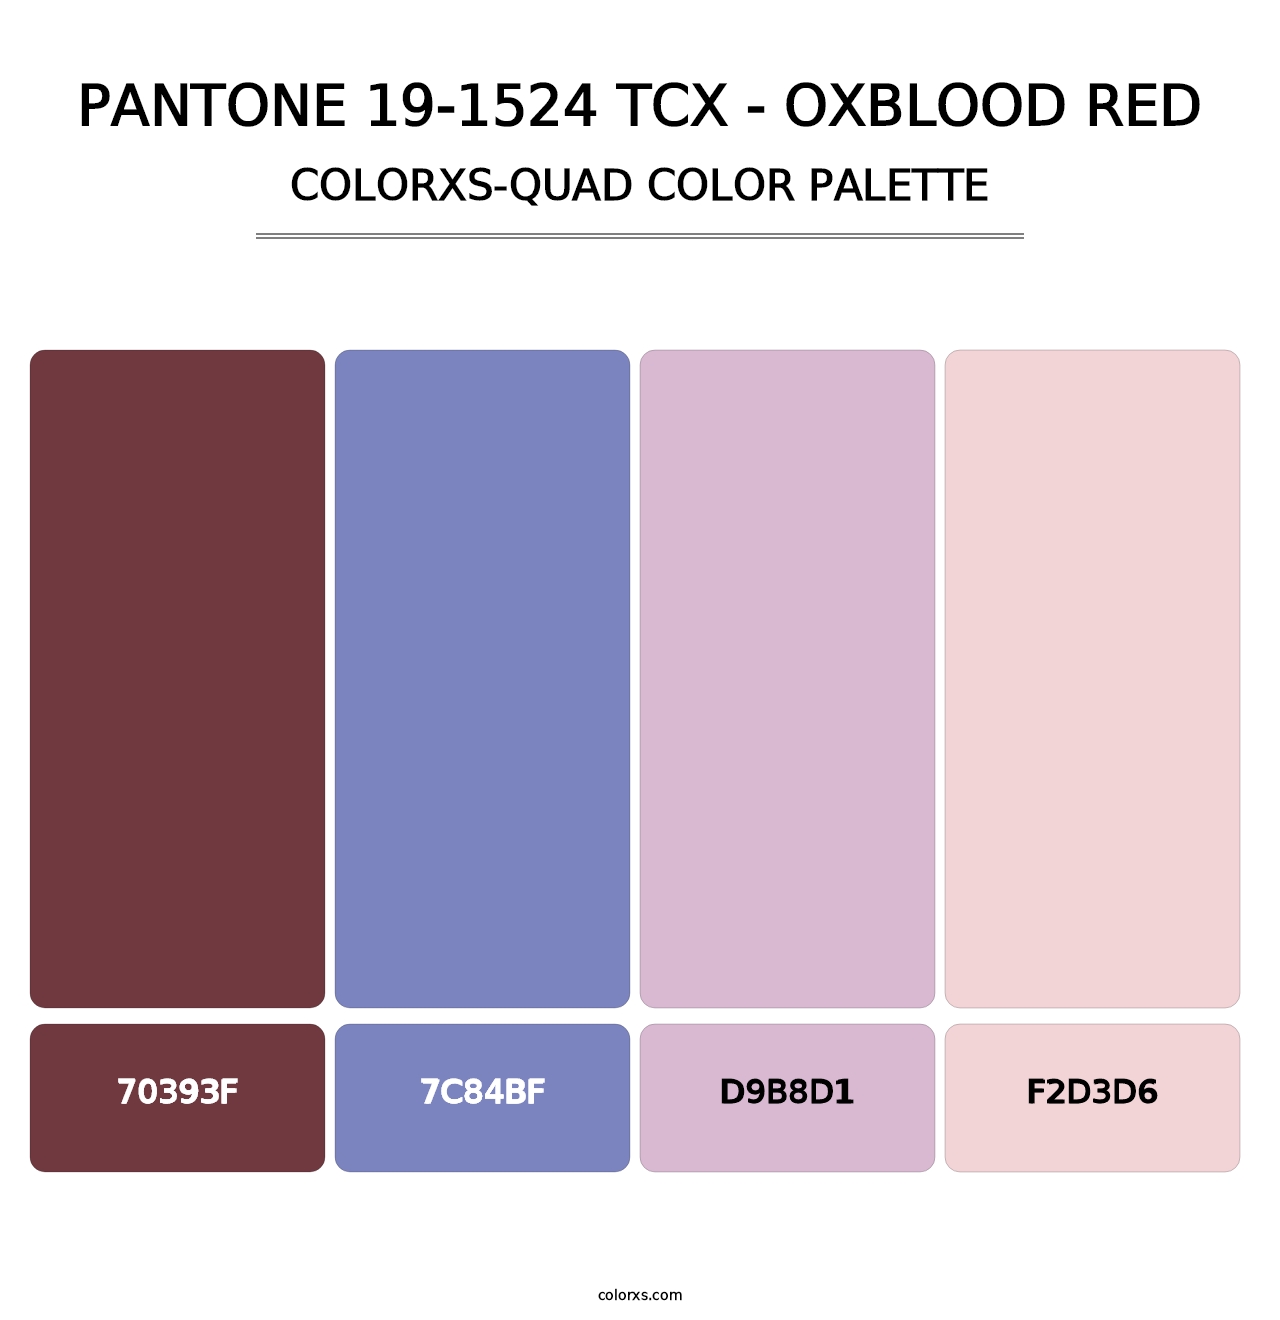 PANTONE 19-1524 TCX - Oxblood Red - Colorxs Quad Palette